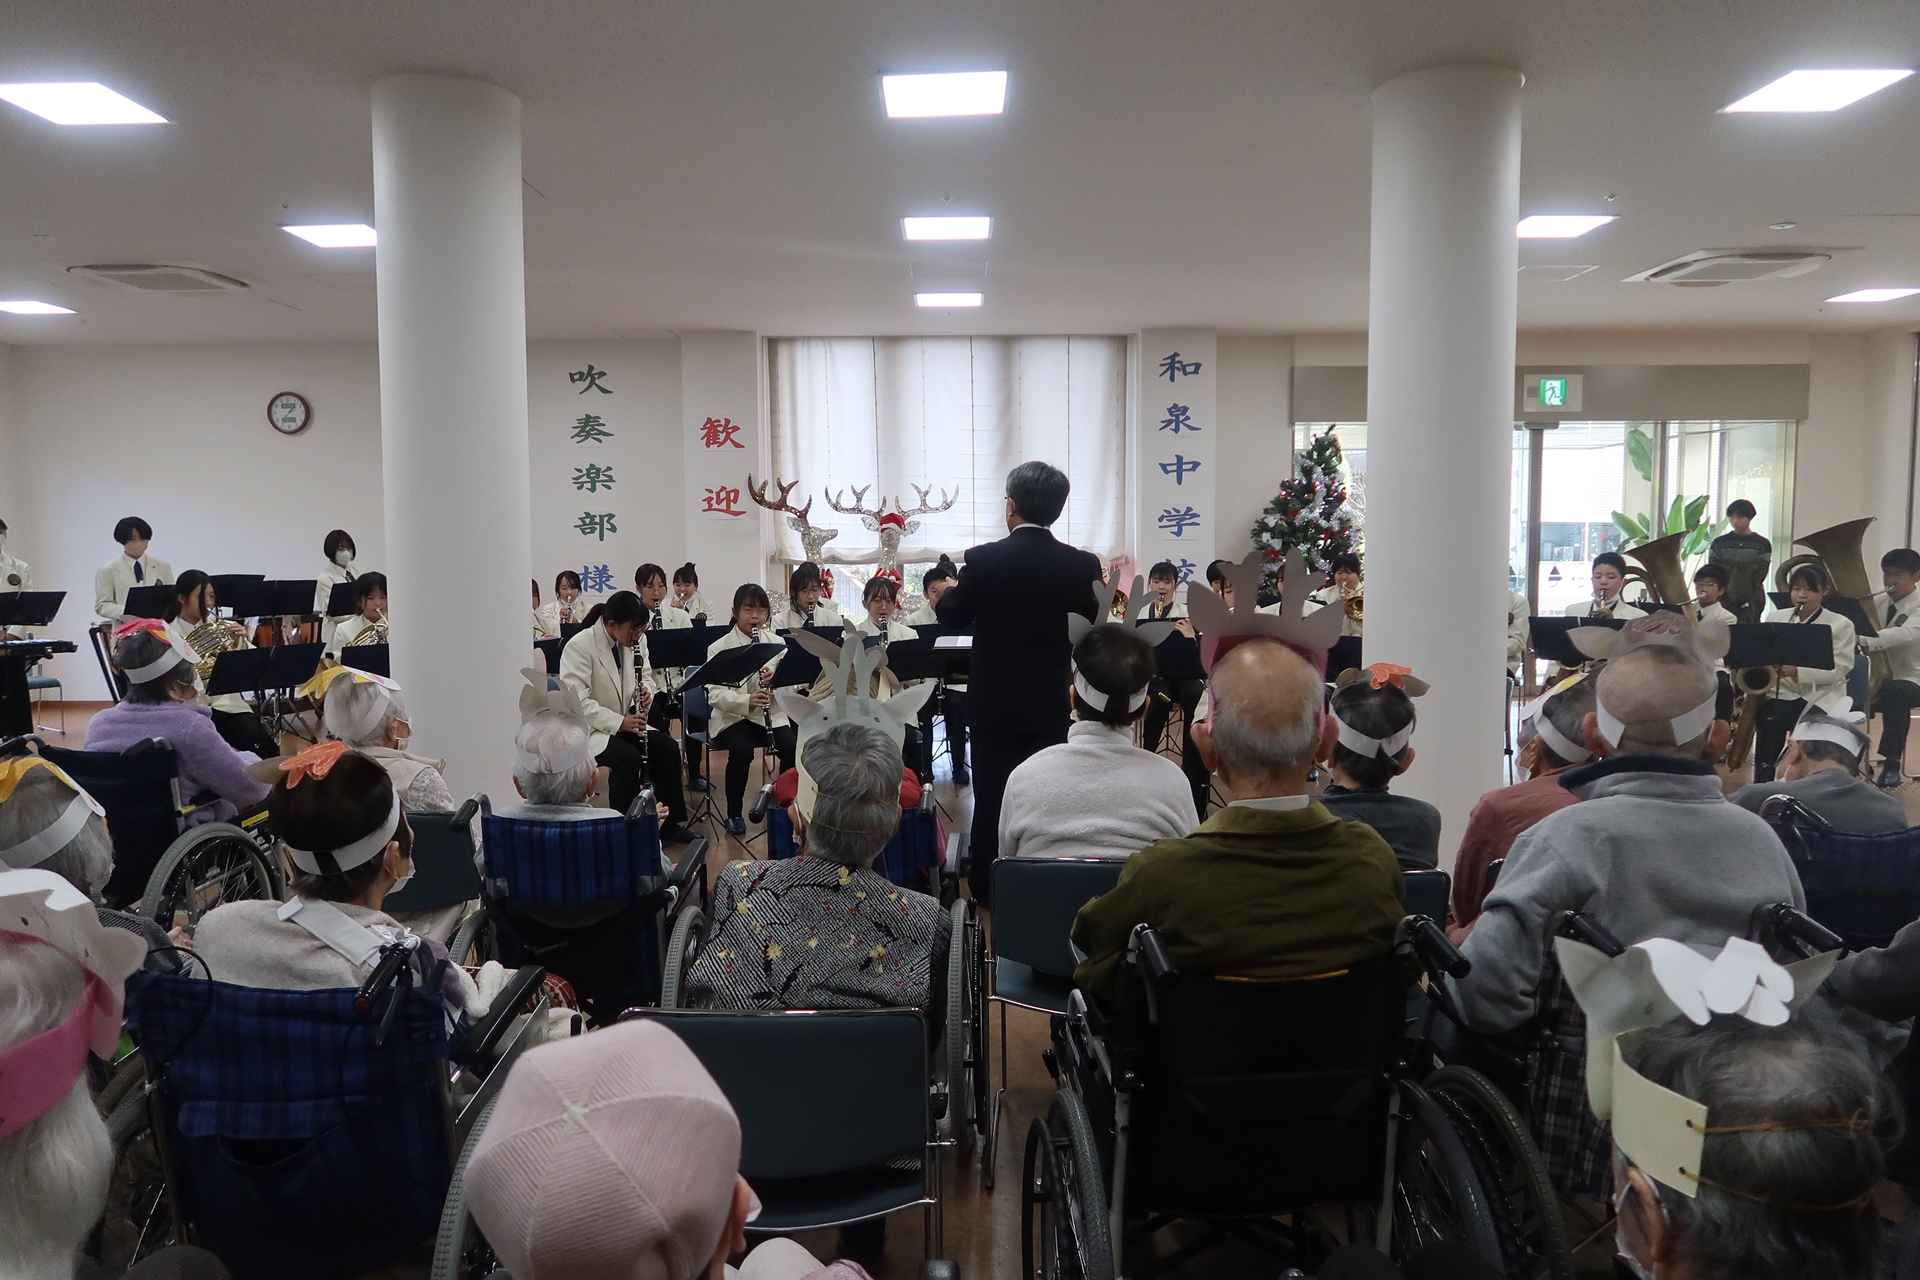 介護老人保健施設 ザ・シーズンの和泉中学校吹奏楽の演奏会で、ご利用者様が心躍るの画像です